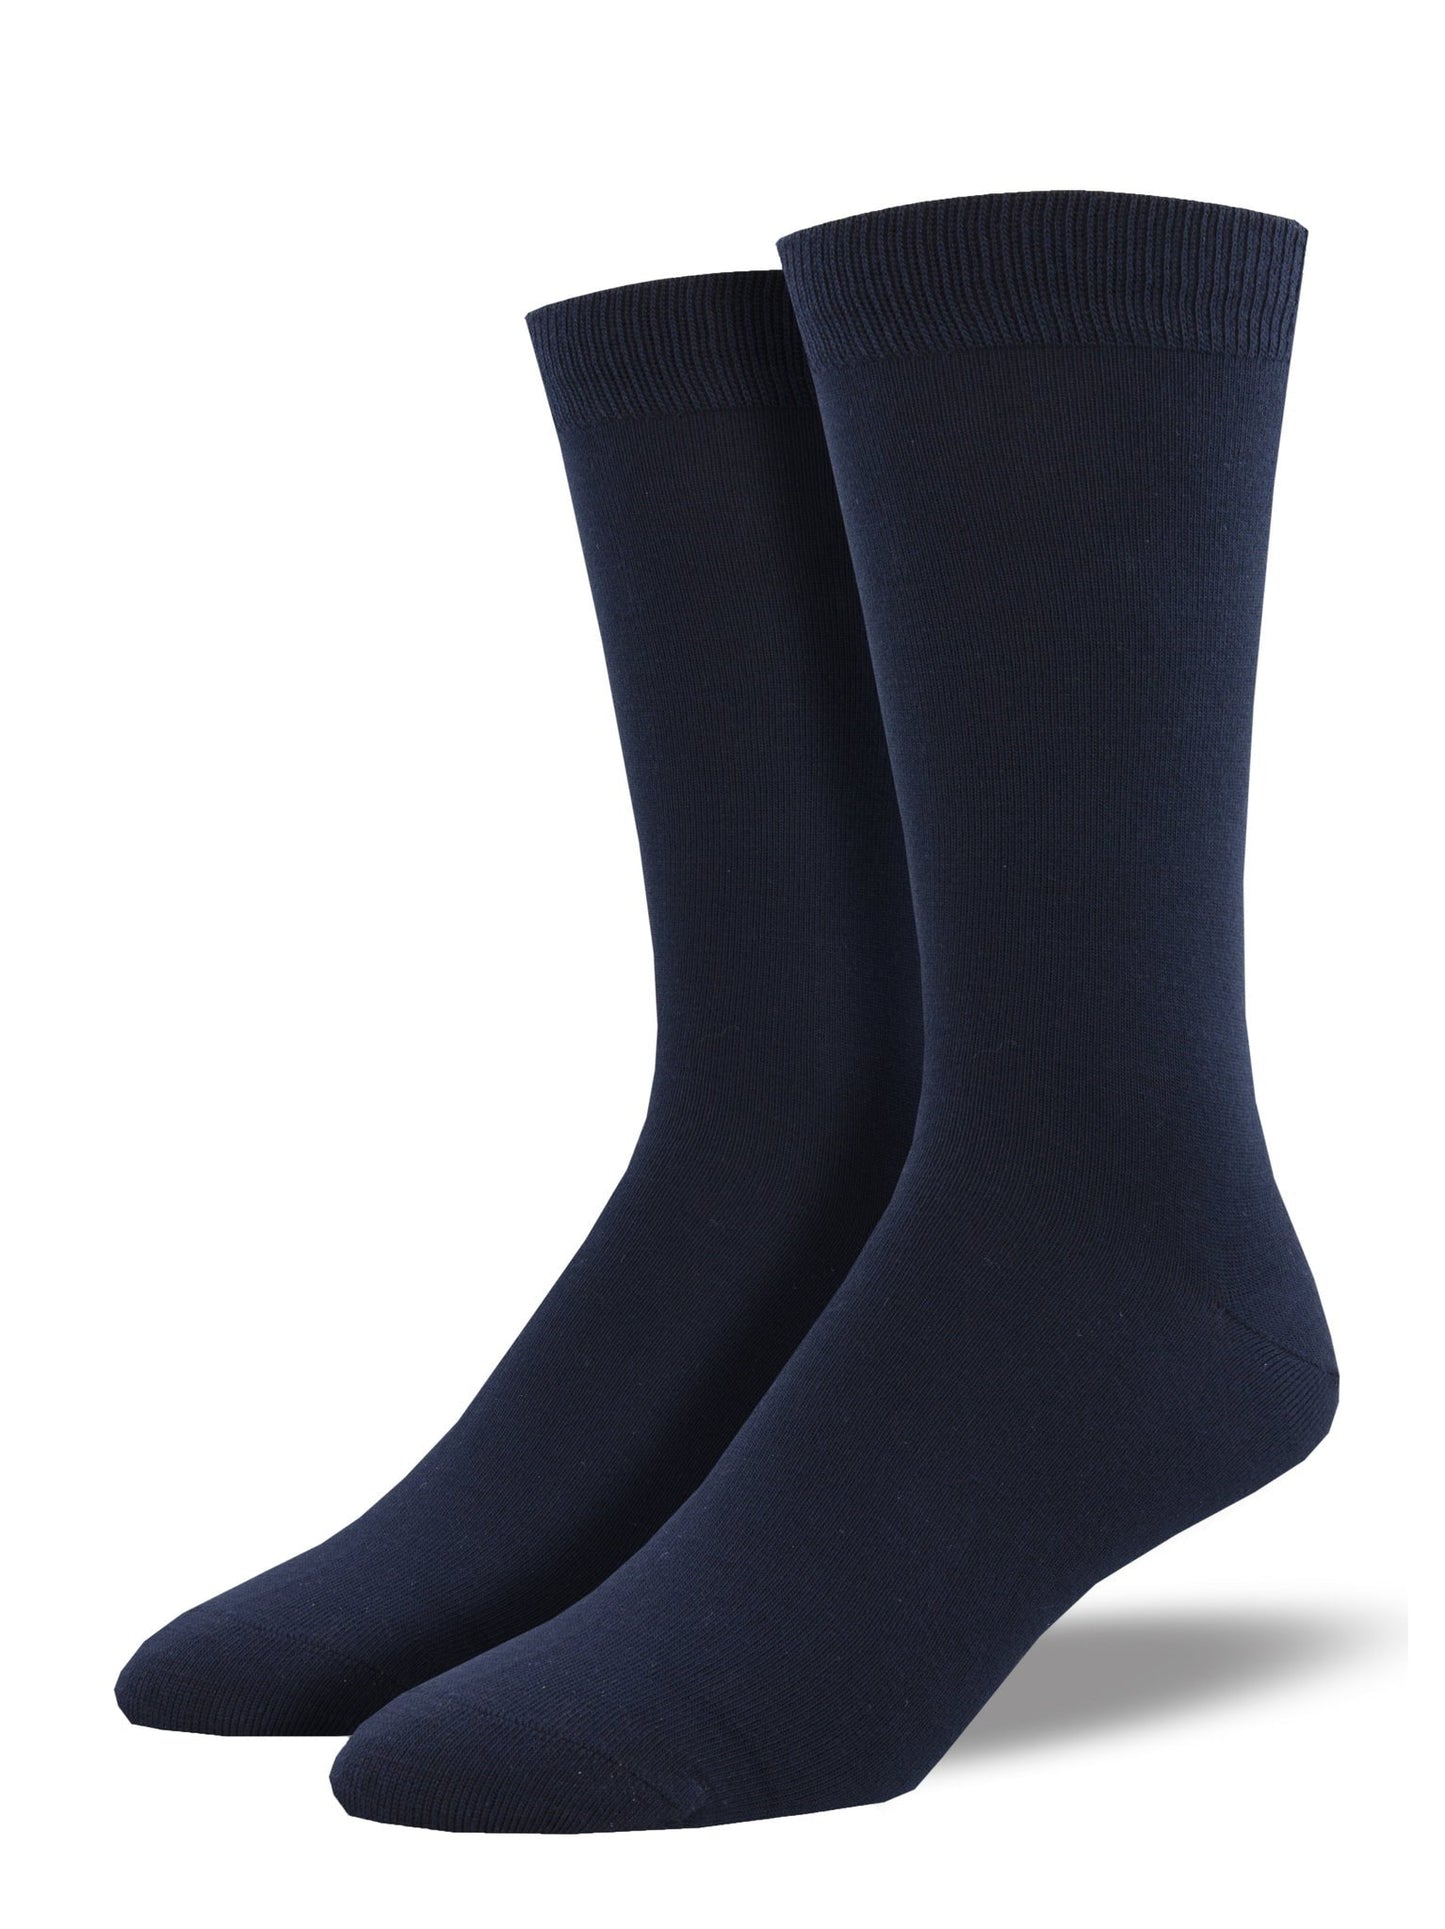 Solid | Bamboo | Men | Navy - Socks - Socksmith